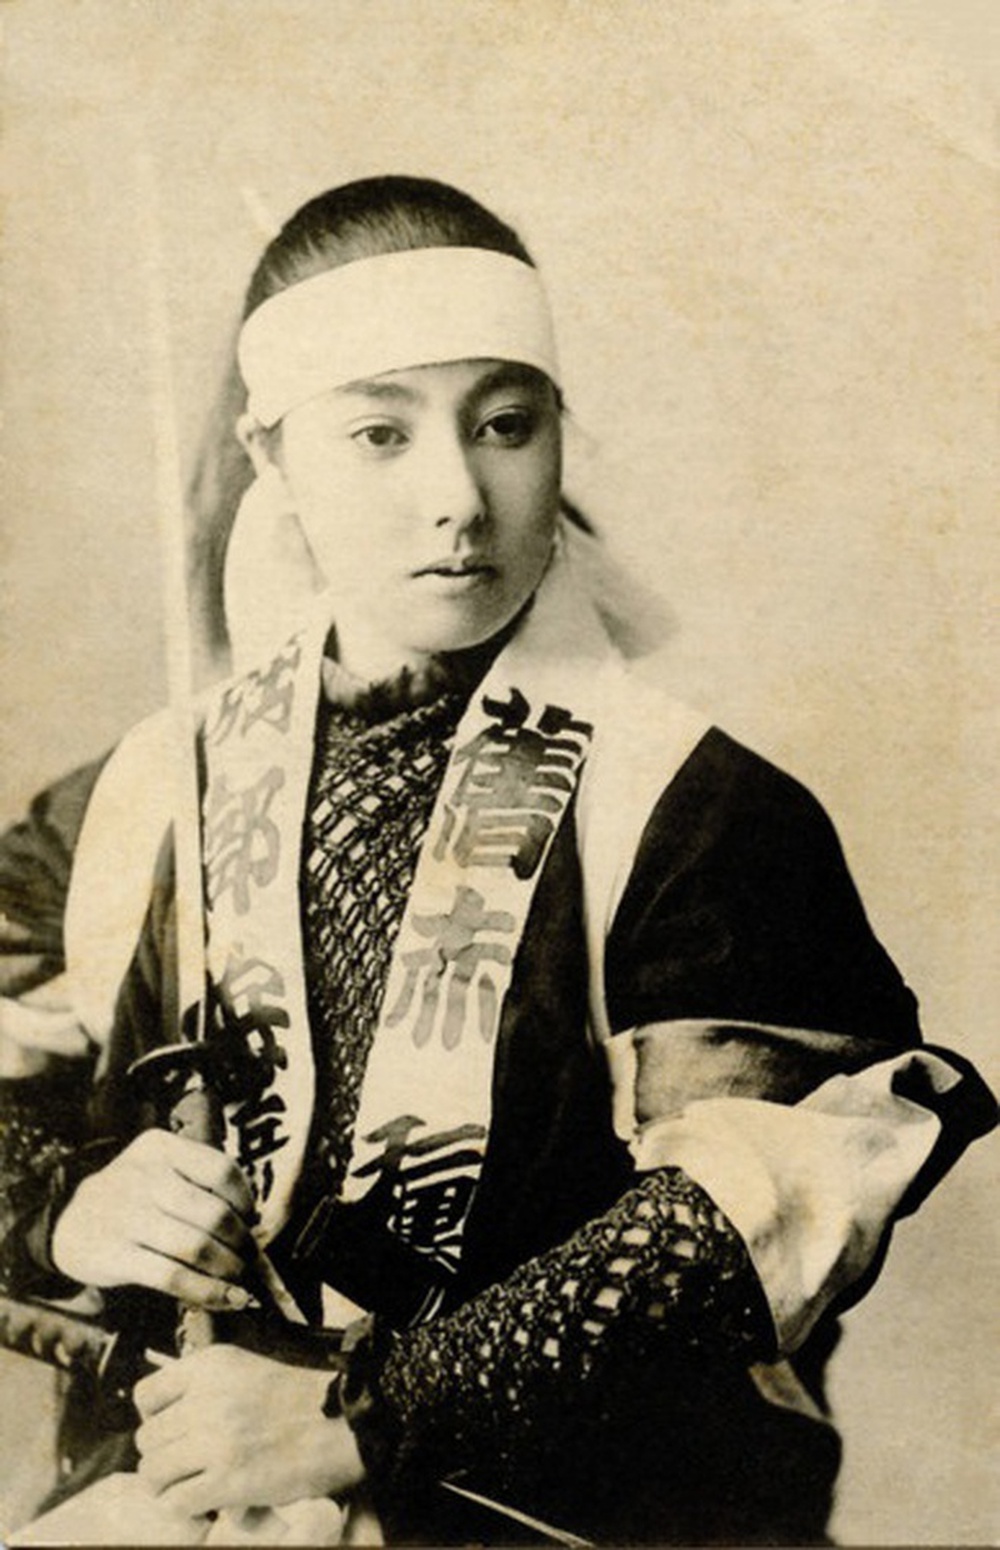 Loạt ảnh hiếm khoe trọn dung mạo cuốn hút lạ thường của các nữ samurai thời xưa - ảnh 2